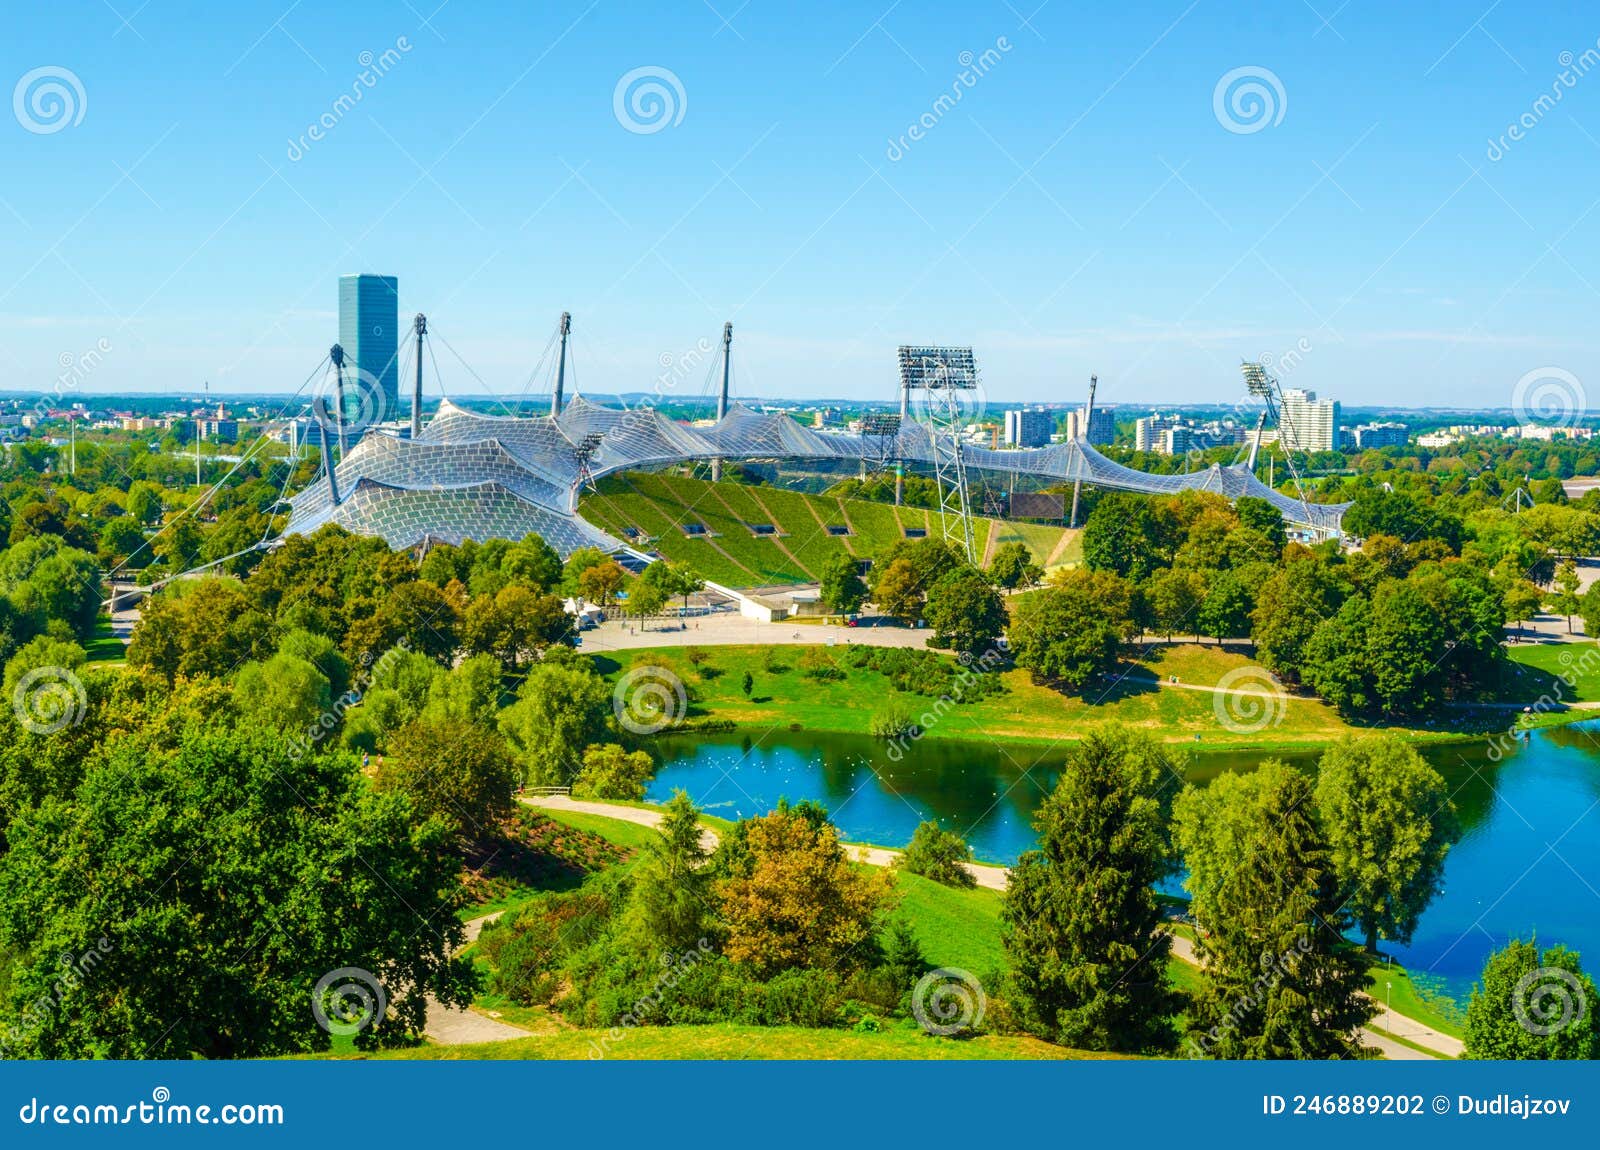 【携程攻略】慕尼黑慕尼黑奥林匹克公园景点,Partial view of the Olympiapark München ...